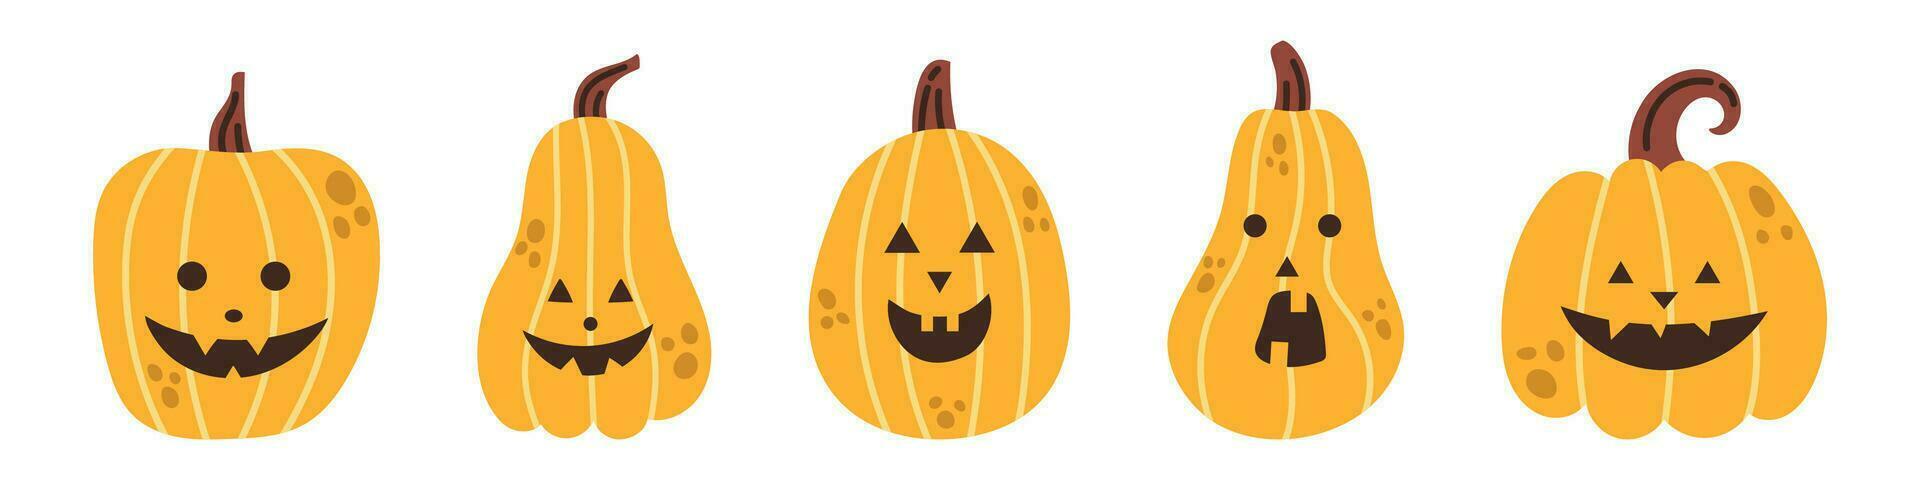 vector halloween pompoen set. verzameling van gelukkig halloween pompoenen in vlak ontwerp. eng en spookachtig gezichten. jack O lantaarn. grappig glimlachen pompoenen reeks voor halloween.